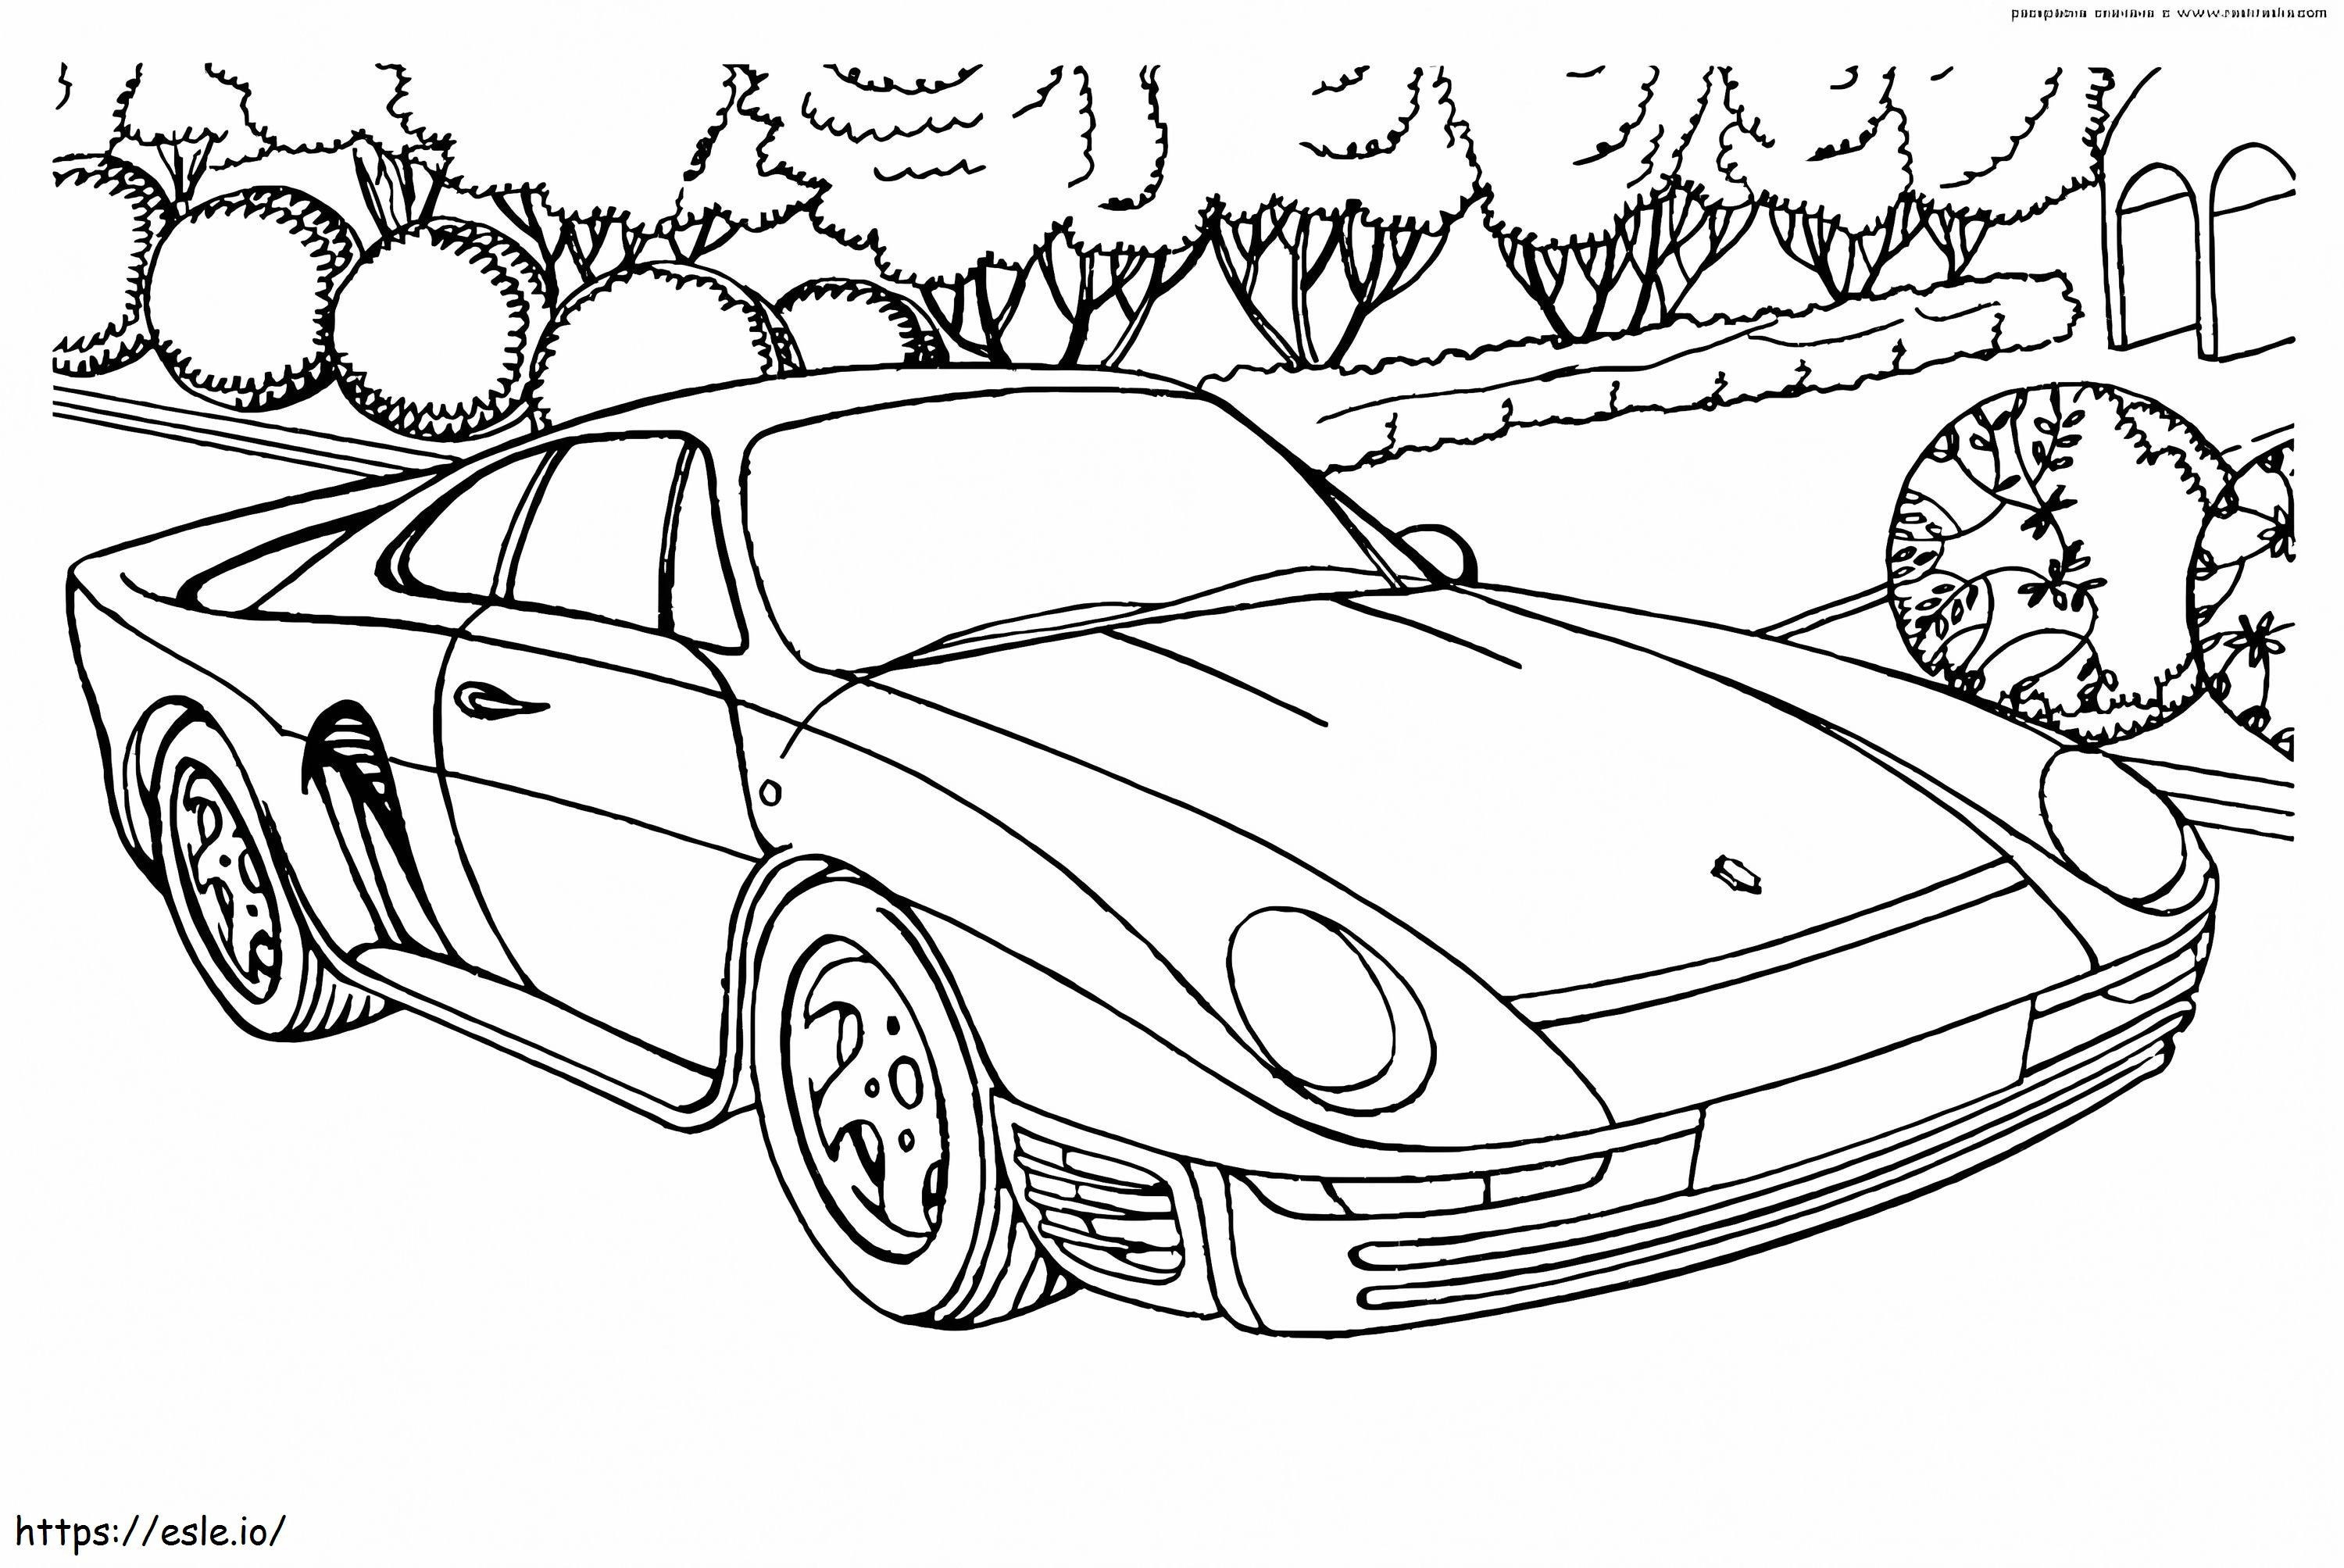 Coloriage Porsche959 à imprimer dessin